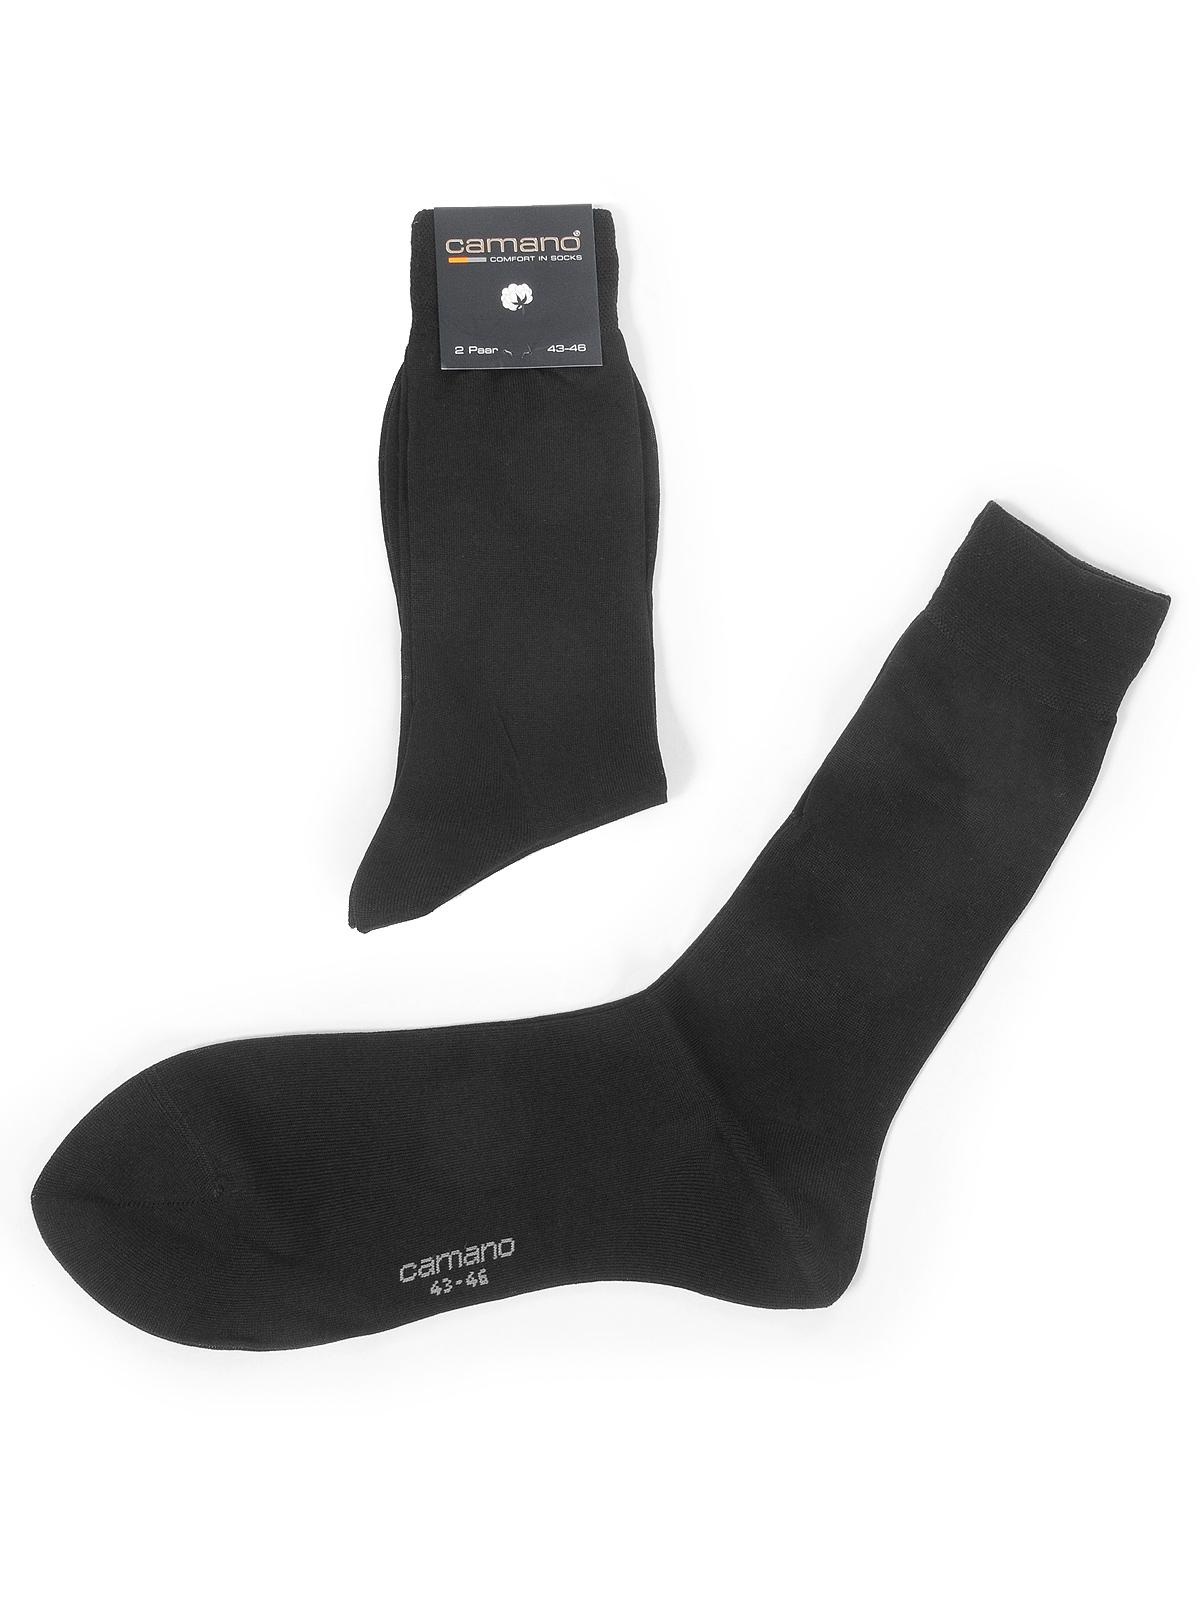 Foto Camano Lote de 2 pares de calcetines negro EU: 43-46